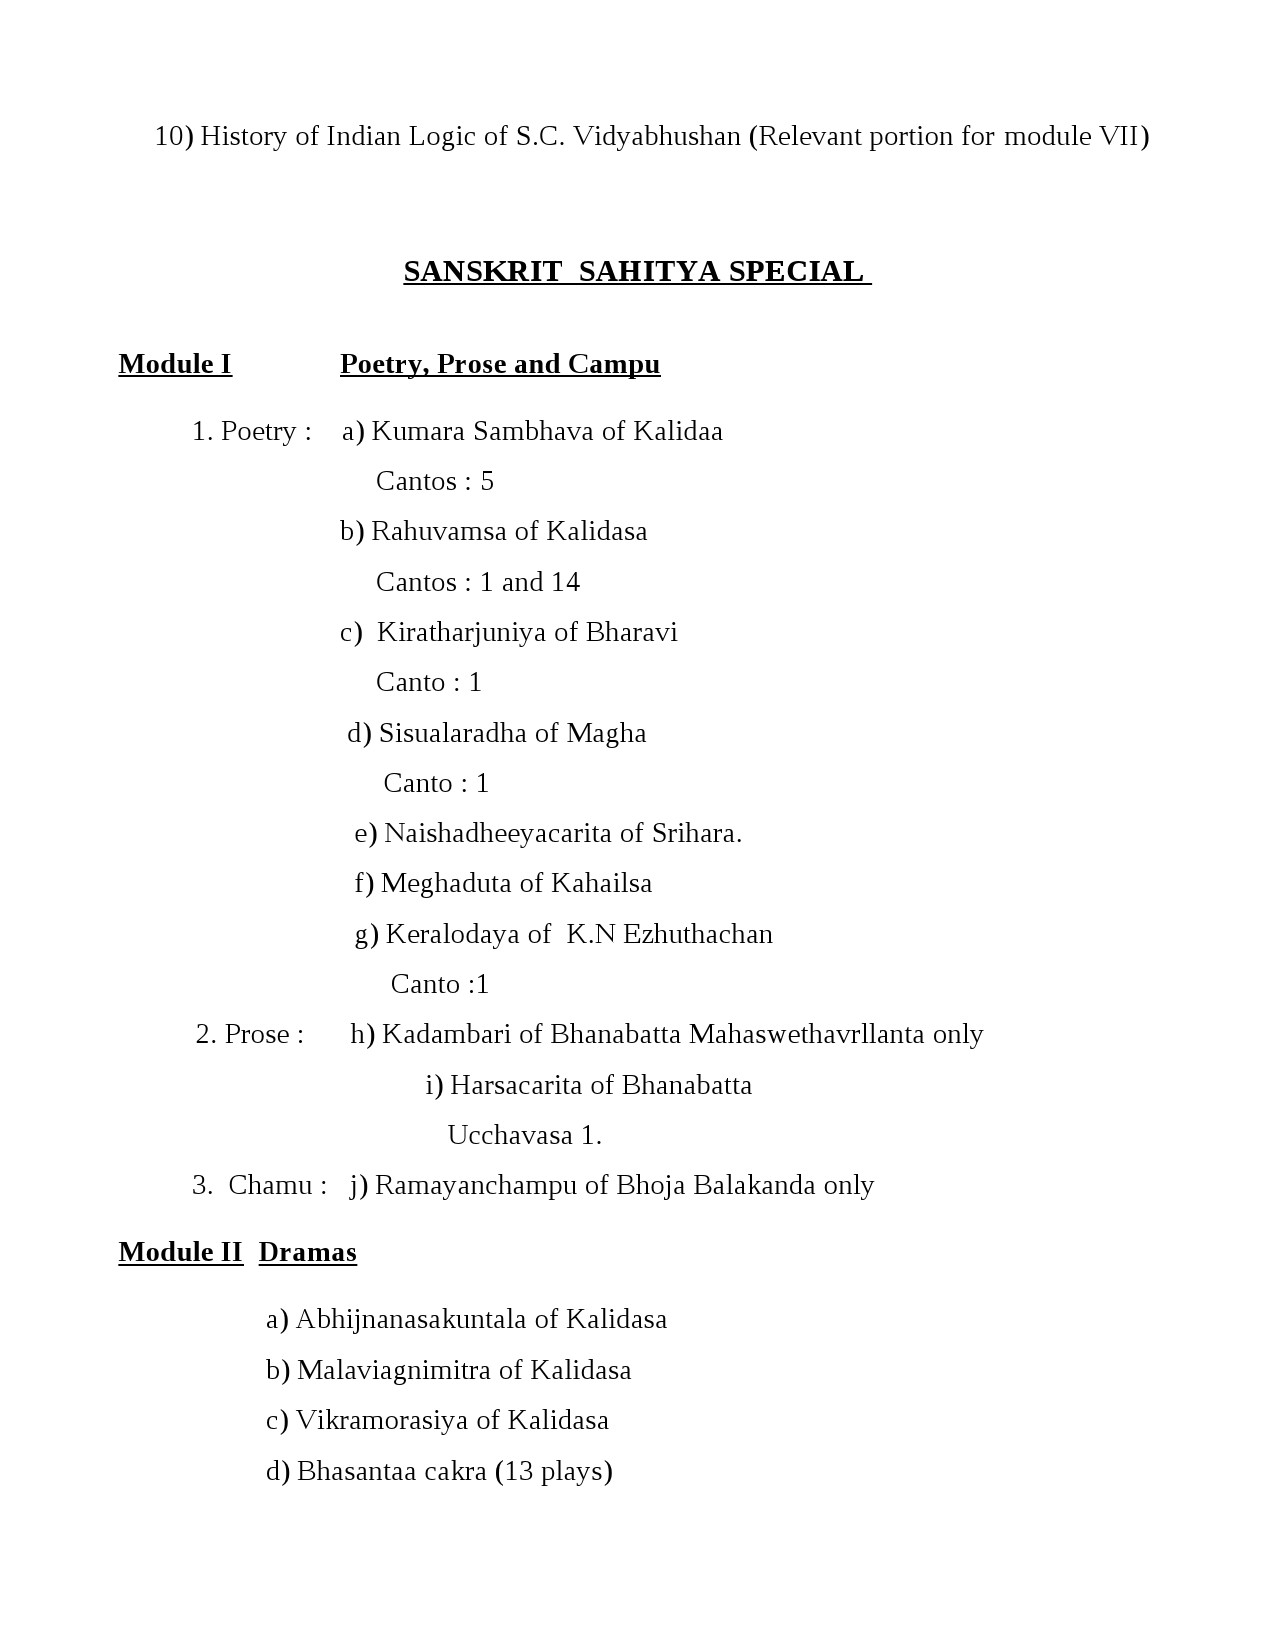 Sanskrit Syllabus for Kerala PSC 2021 Exam - Notification Image 11